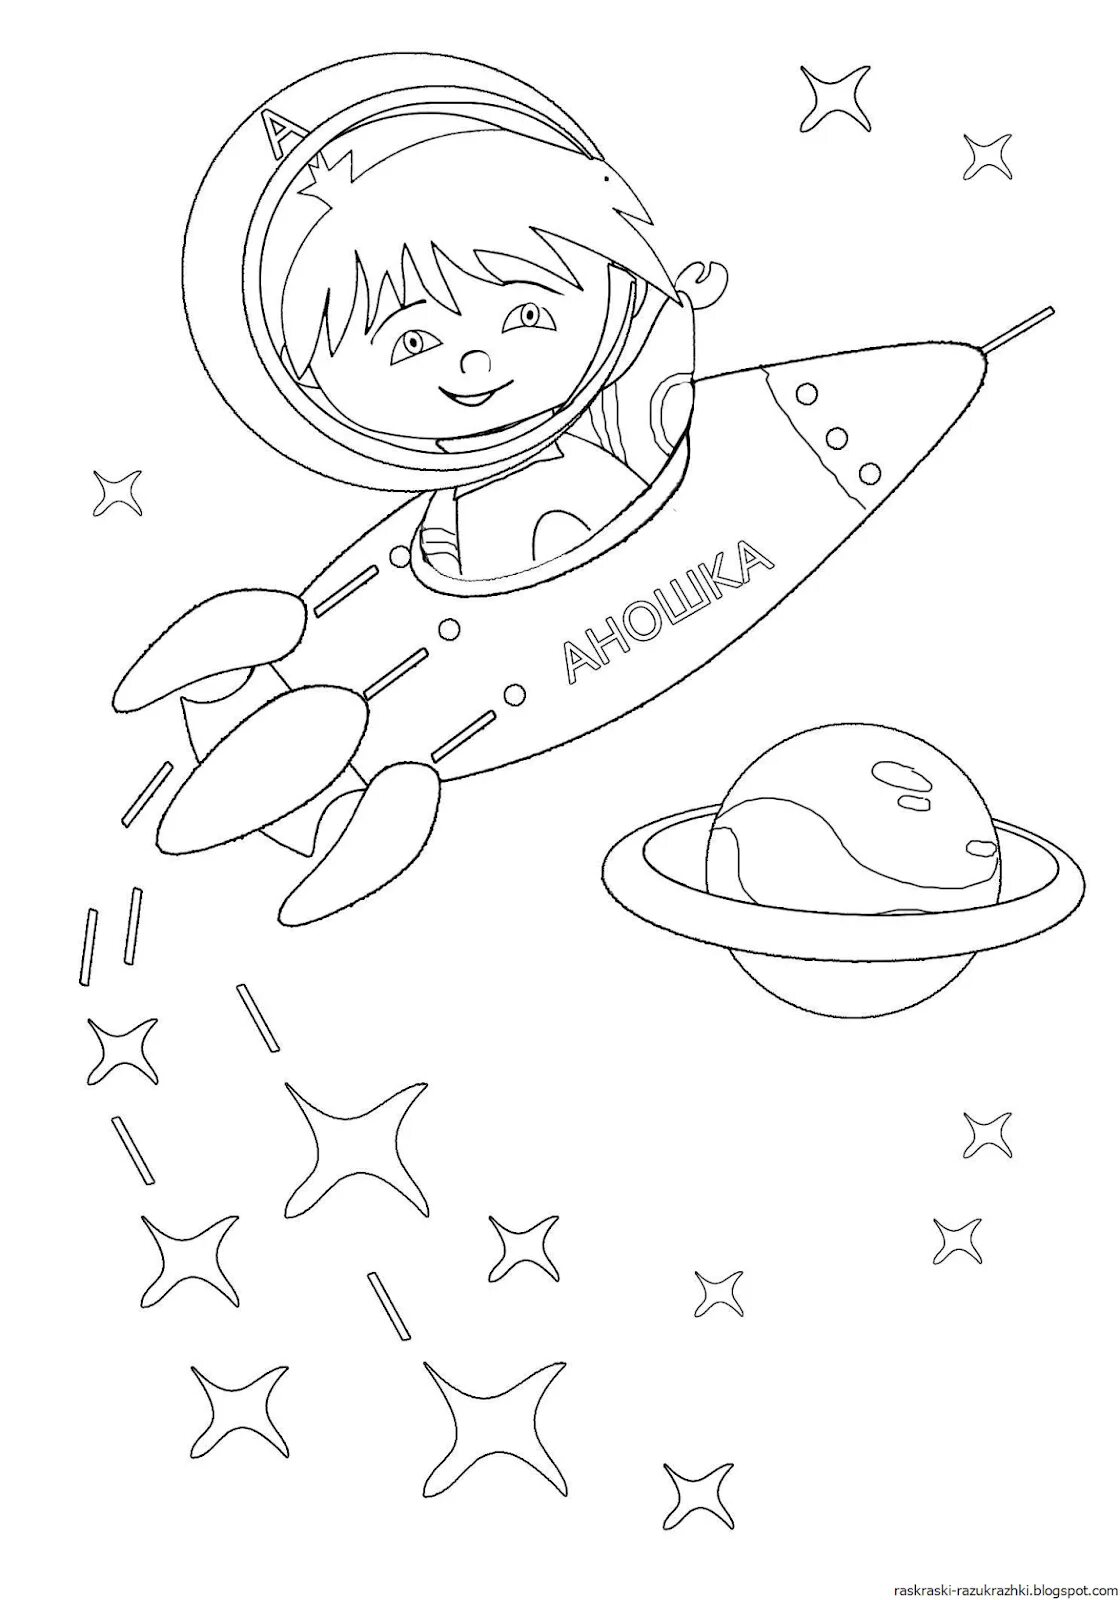 Раскраска космос для детей 3 лет. Раскраска. В космосе. Космос раскраска для детей. Раскраска космонавтика. Раскраска день космонавтики для детей.